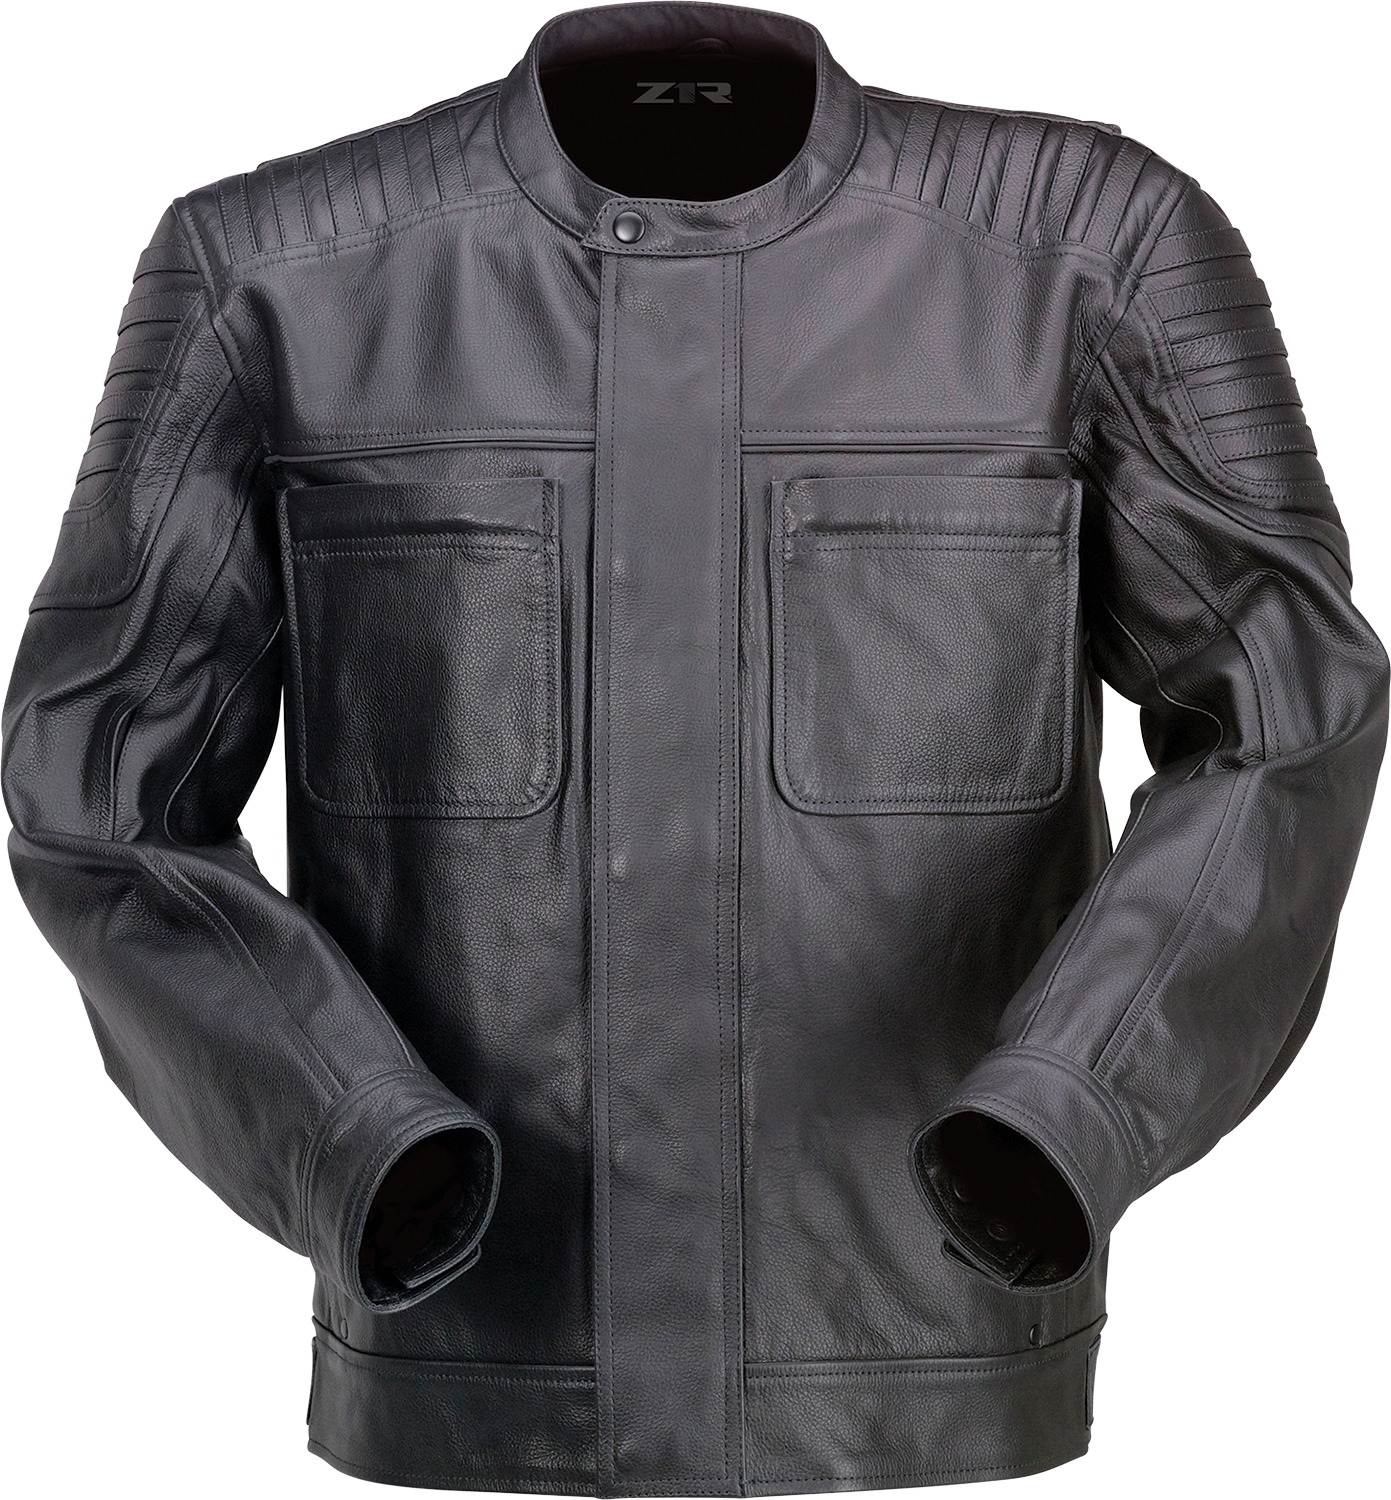 Z1R Widower Leather Jacket - Black - XL 2810-3972